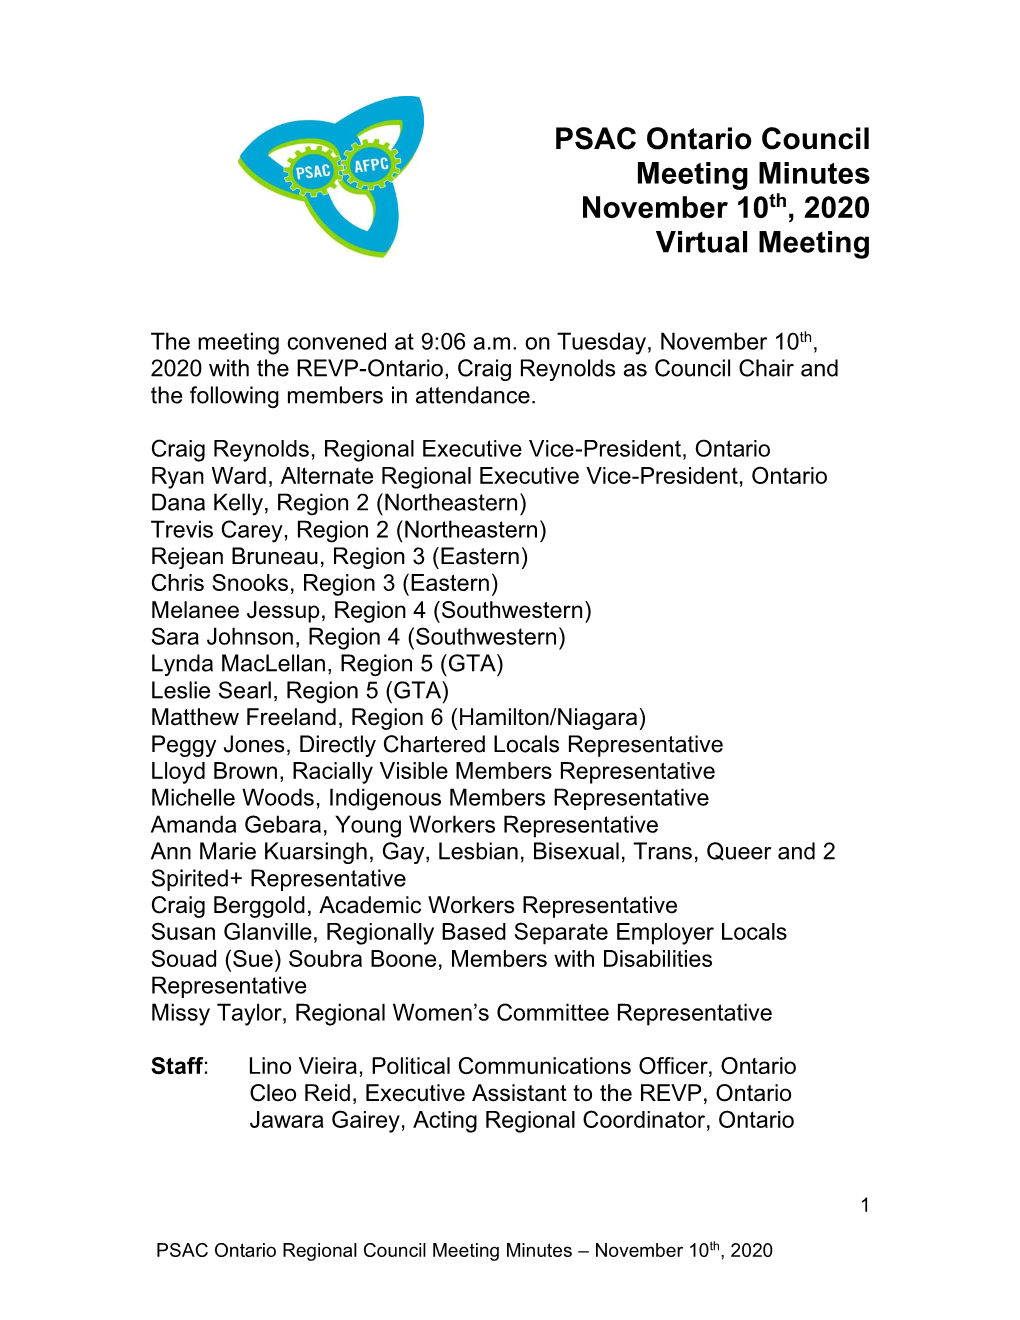 PSAC Ontario Council Meeting Minutes November 10Th, 2020 Virtual Meeting